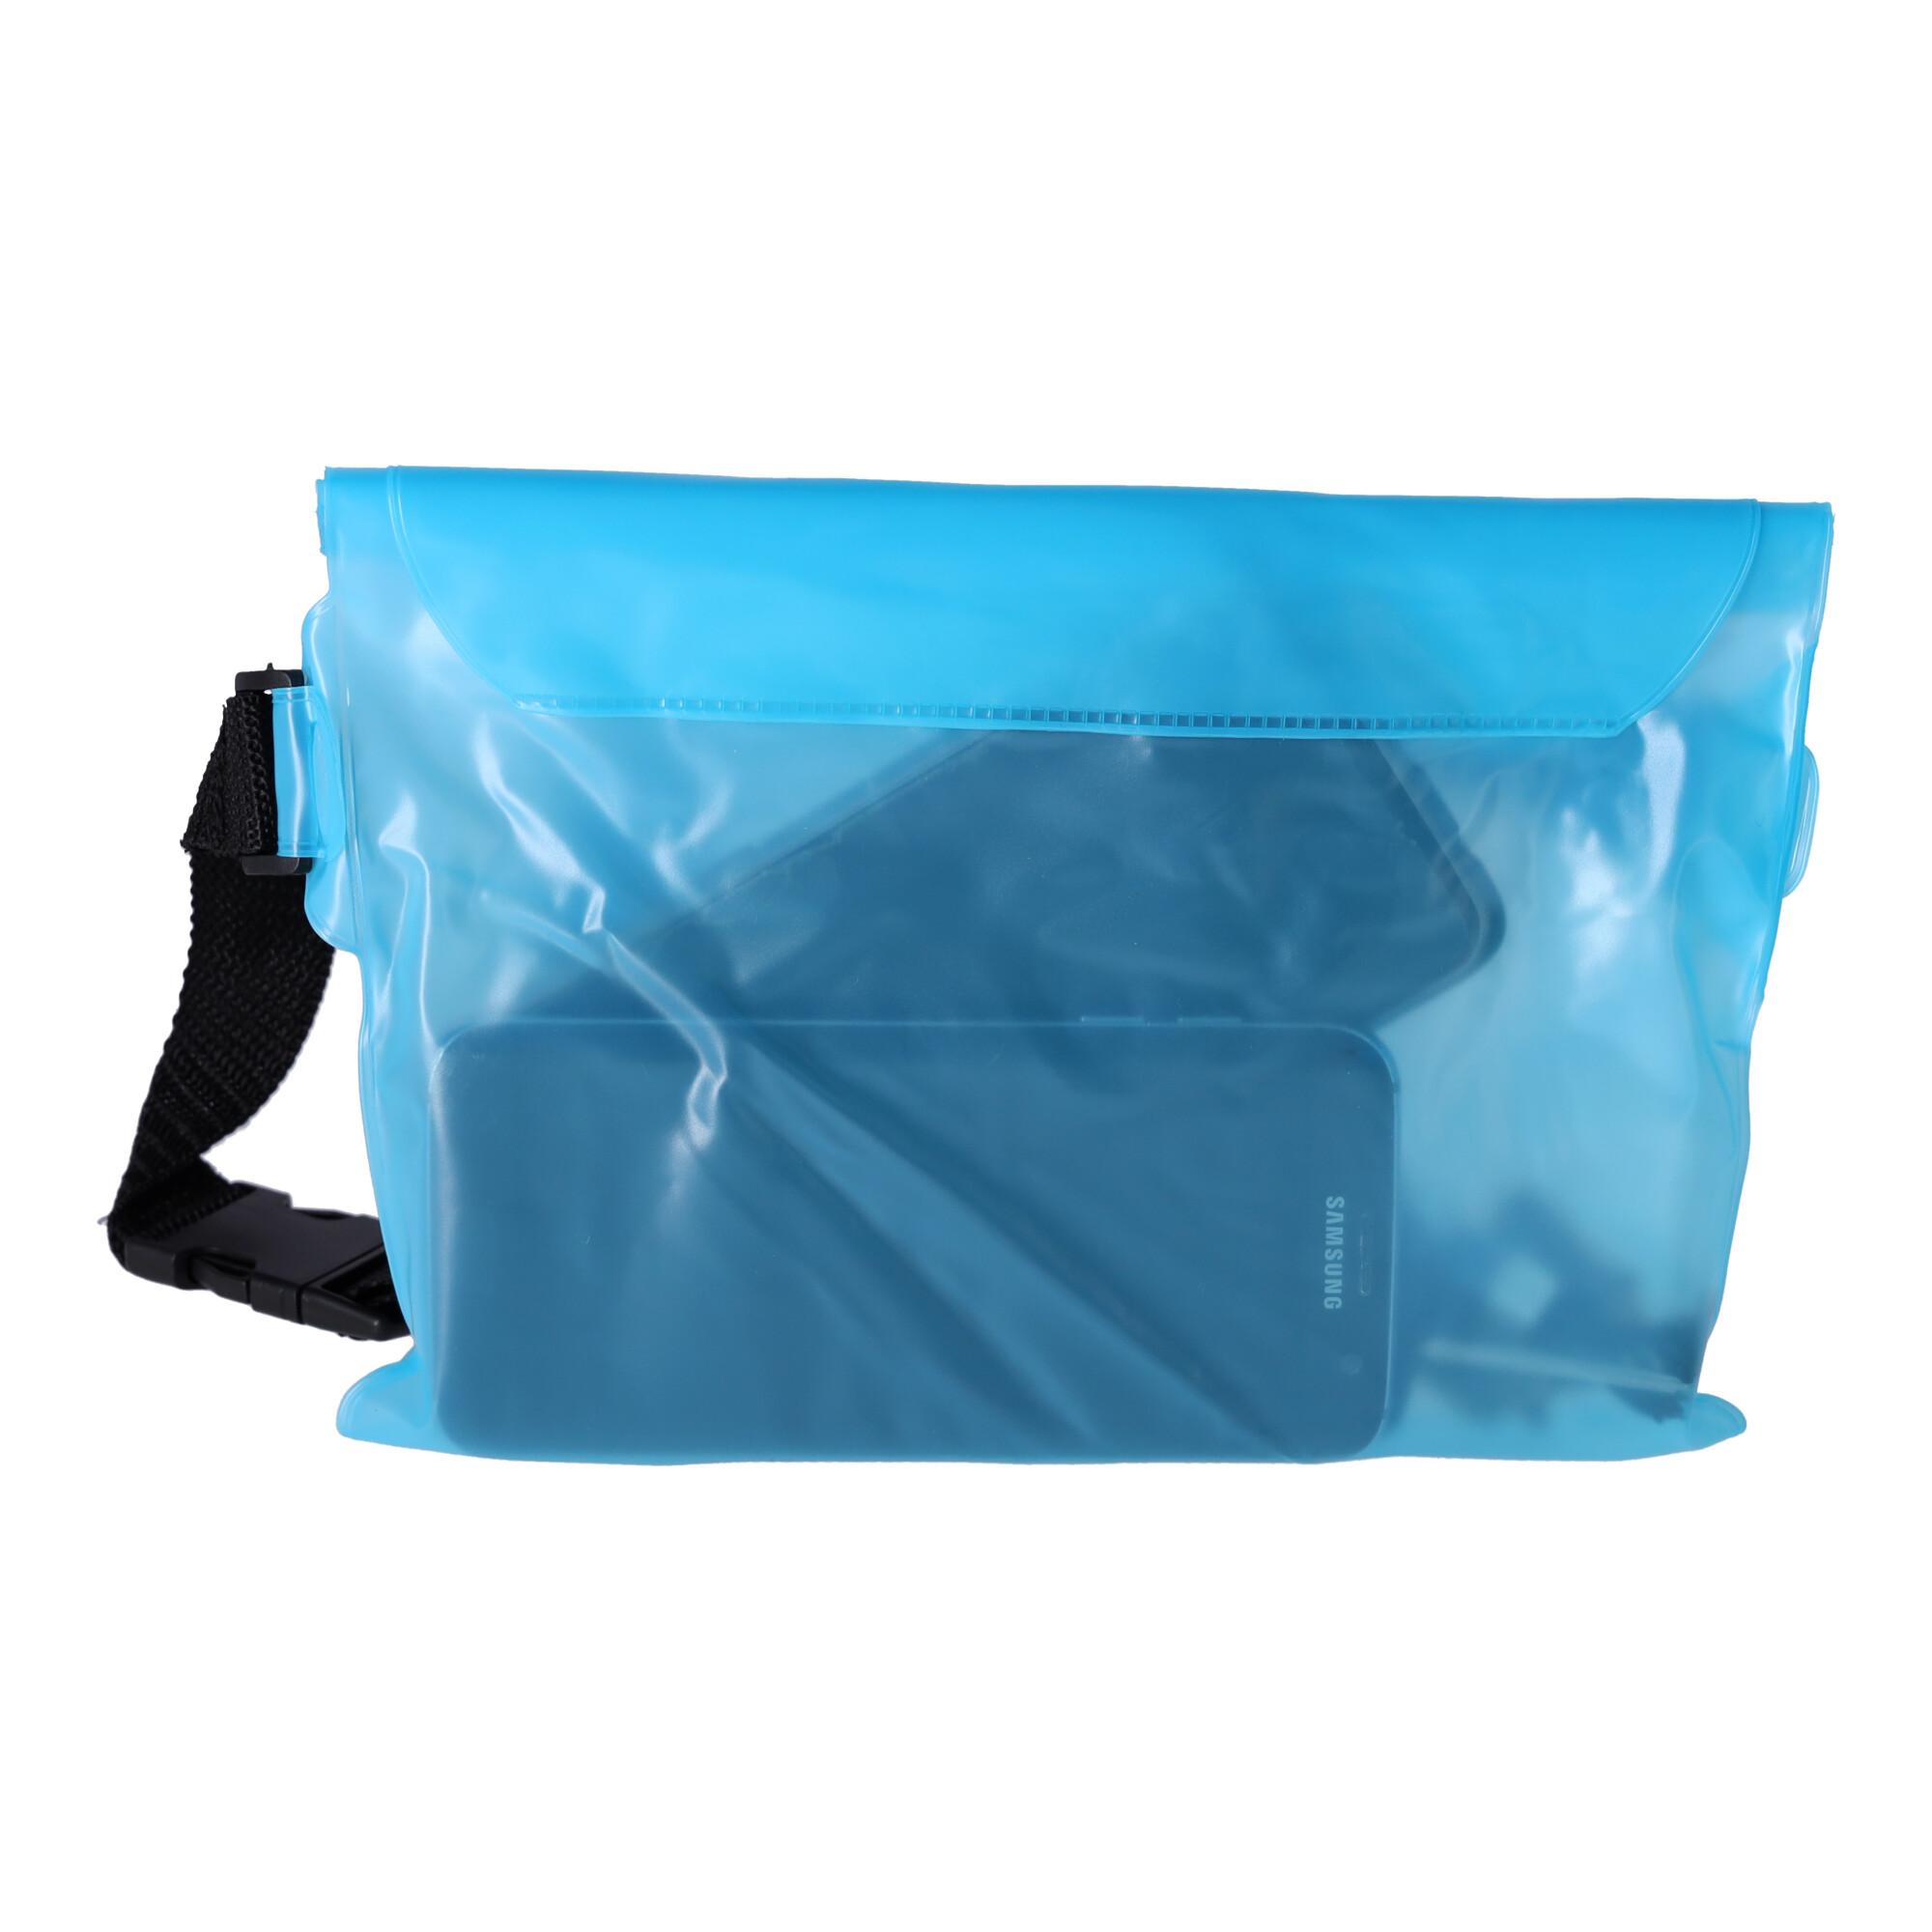 Waterproof kidney, belt pouch - light blue